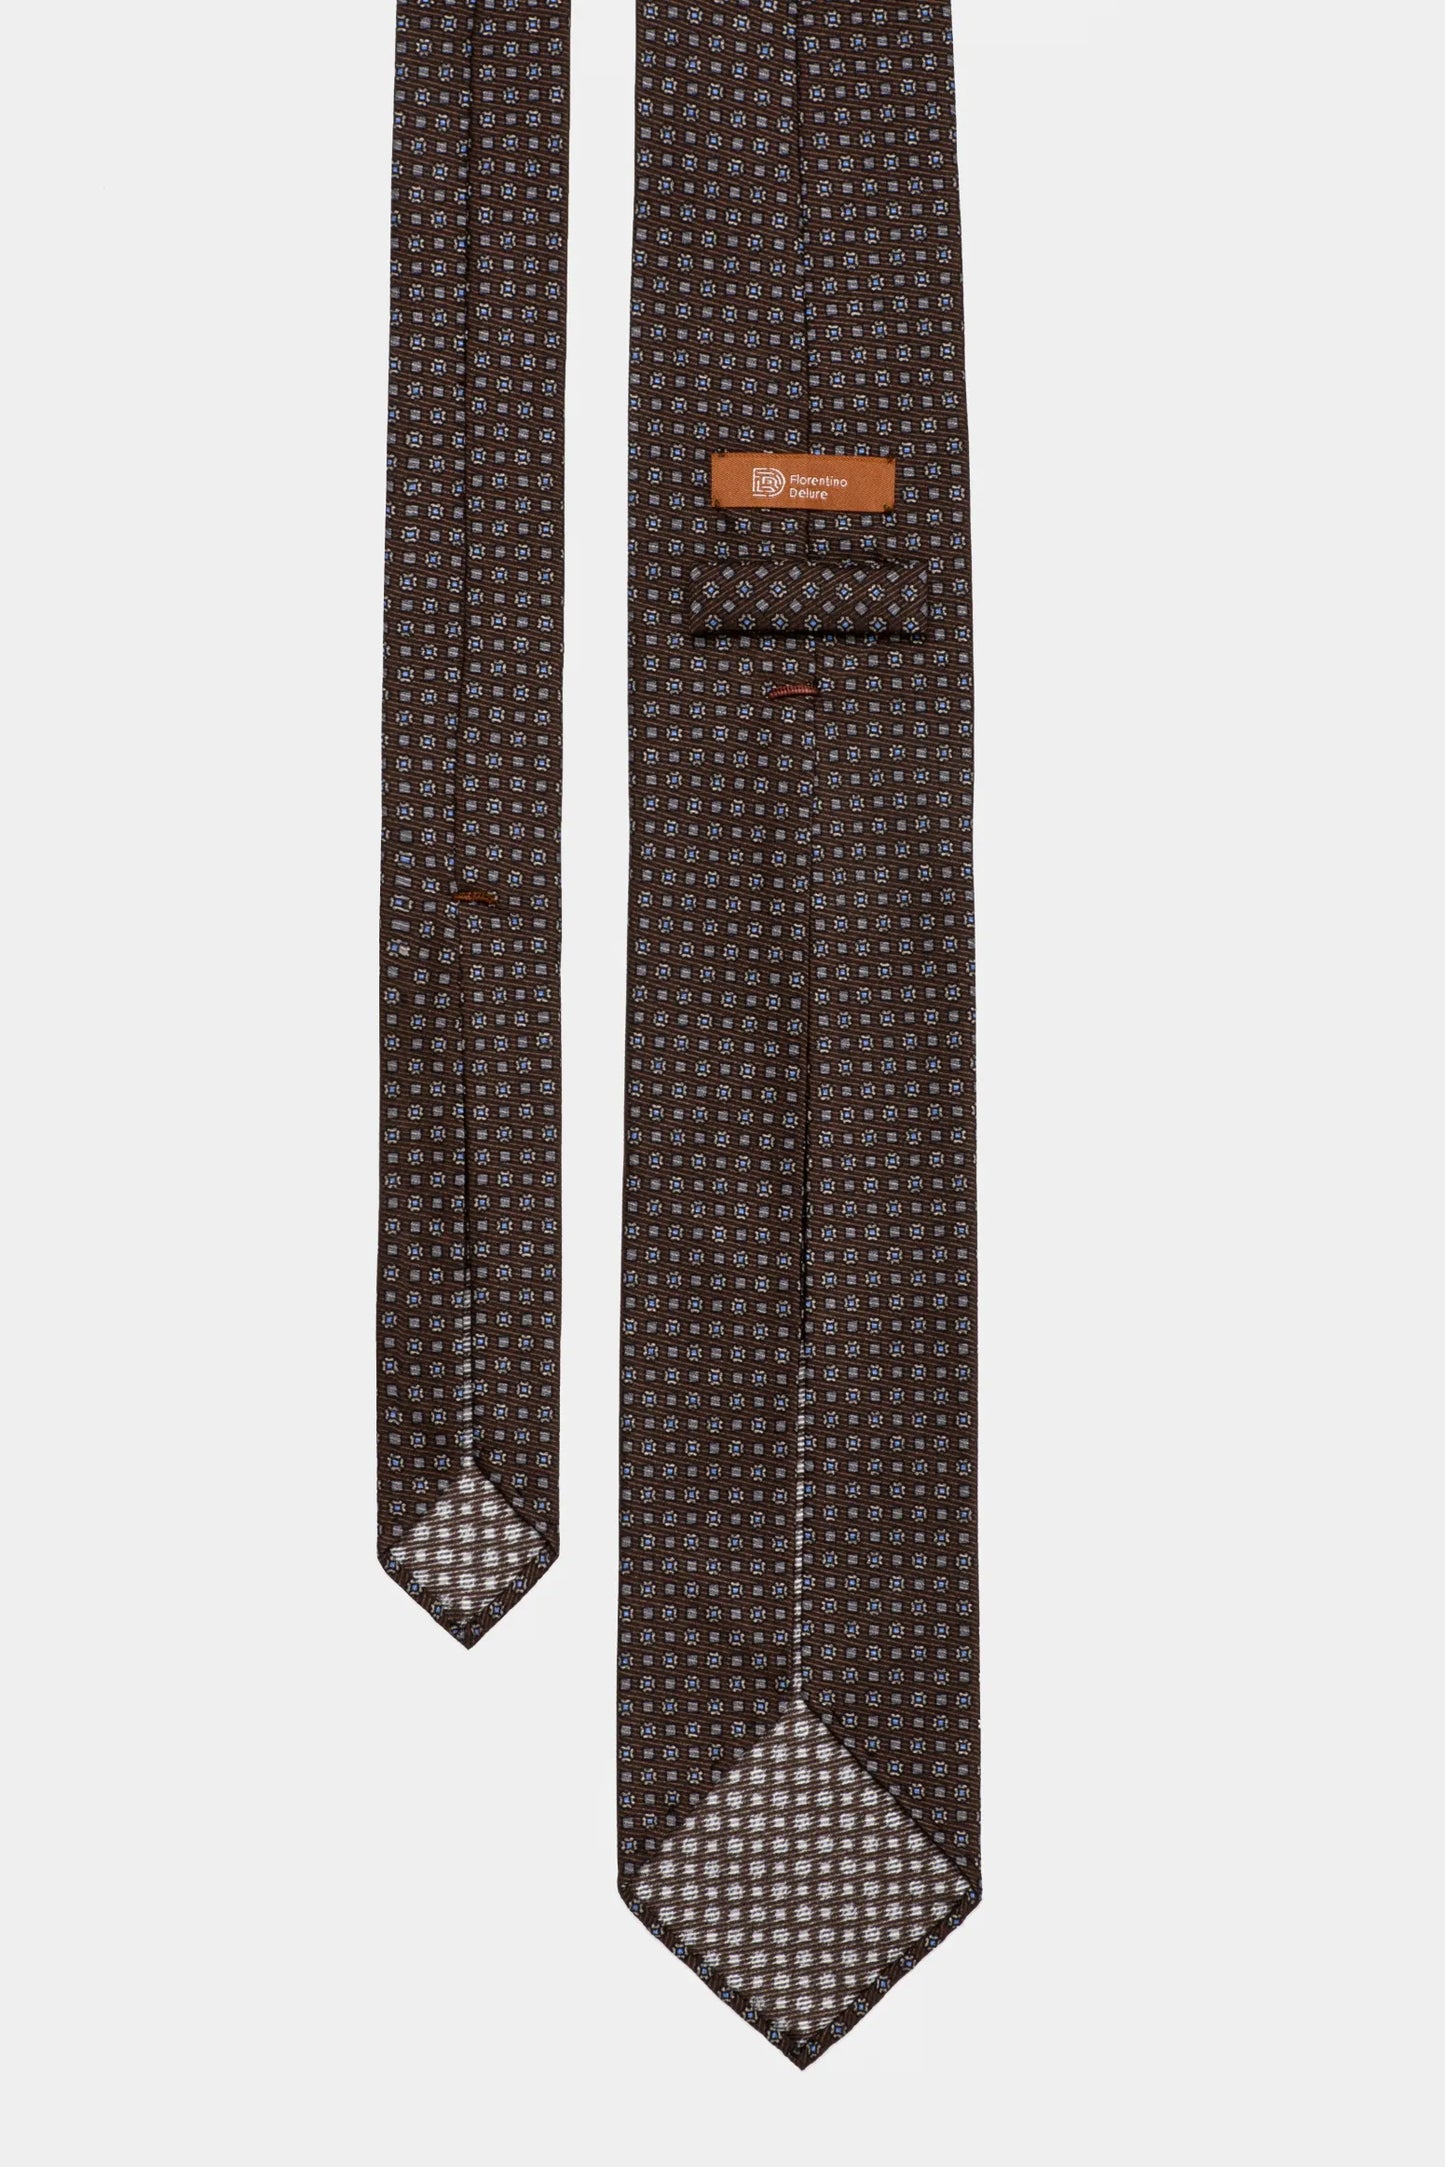 Brown Paisley 7-Fold Tie